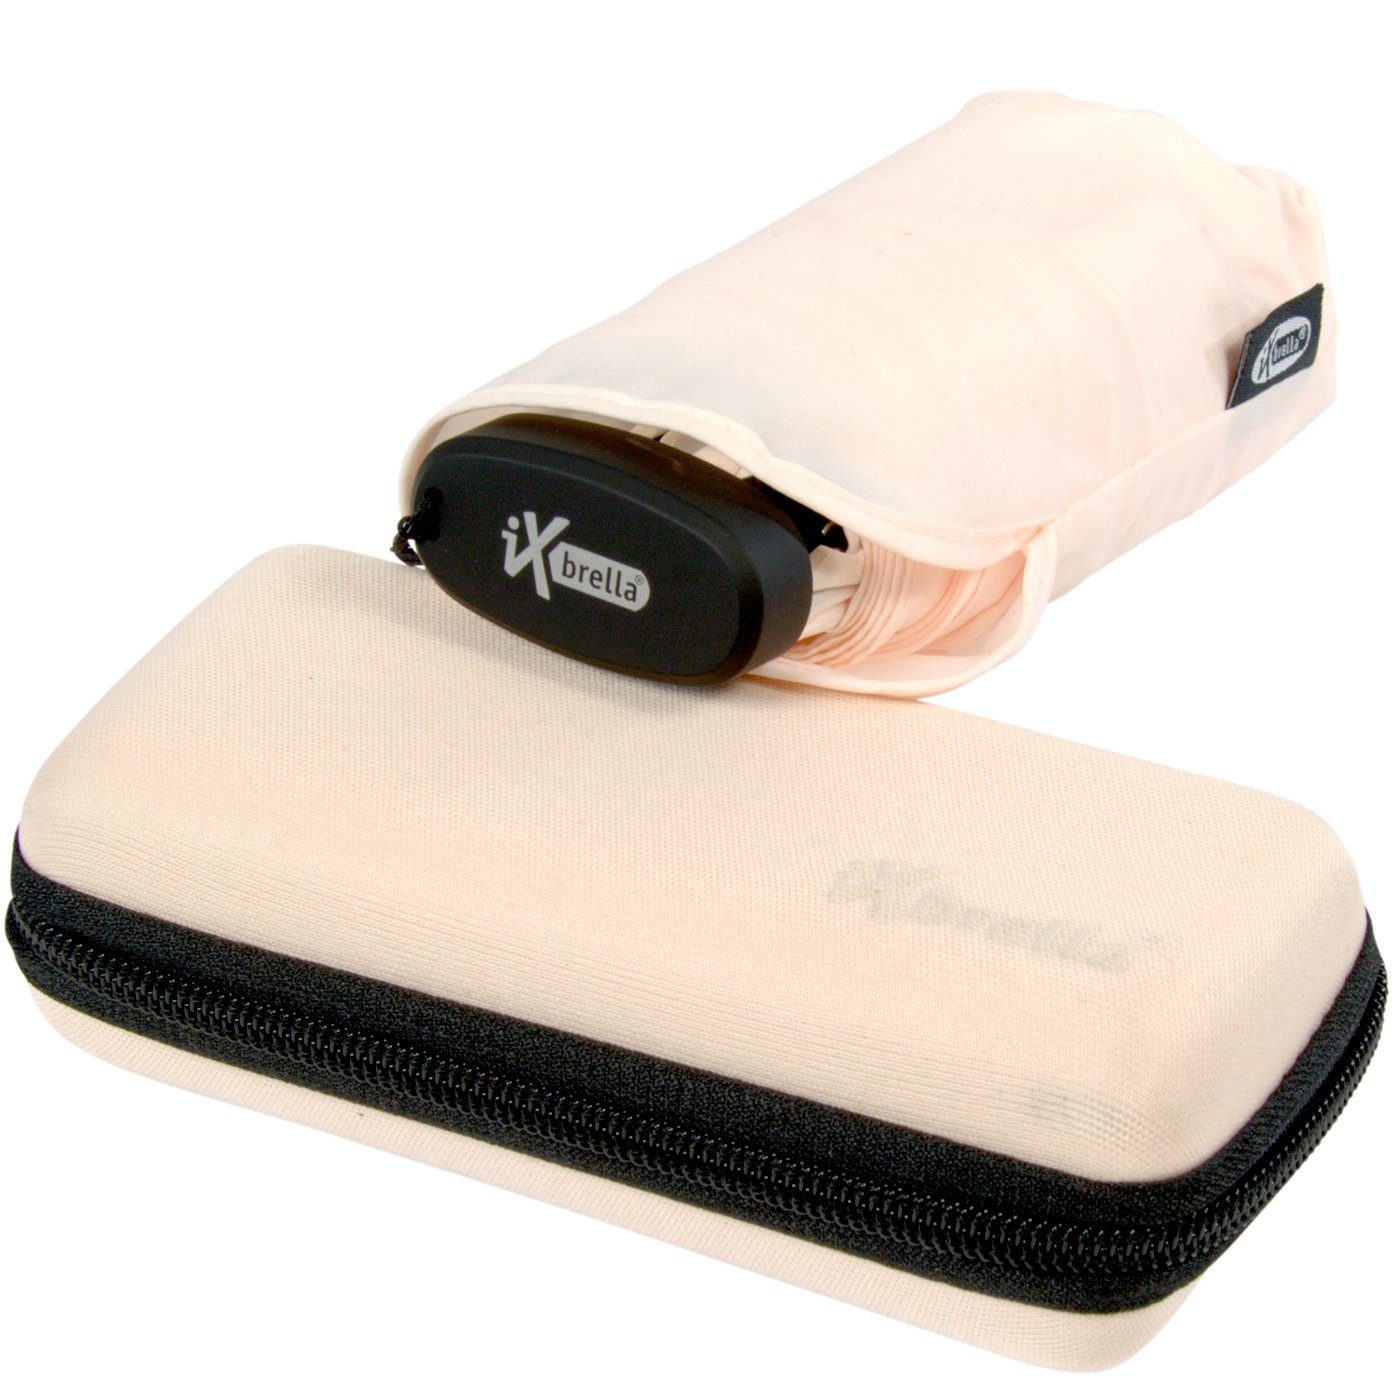 salt Schirm sea Handy Mini - winziger Softcase-Etui cm 15 Format, iX-brella Taschenregenschirm Ultra im mit hellrosa ultra-klein,